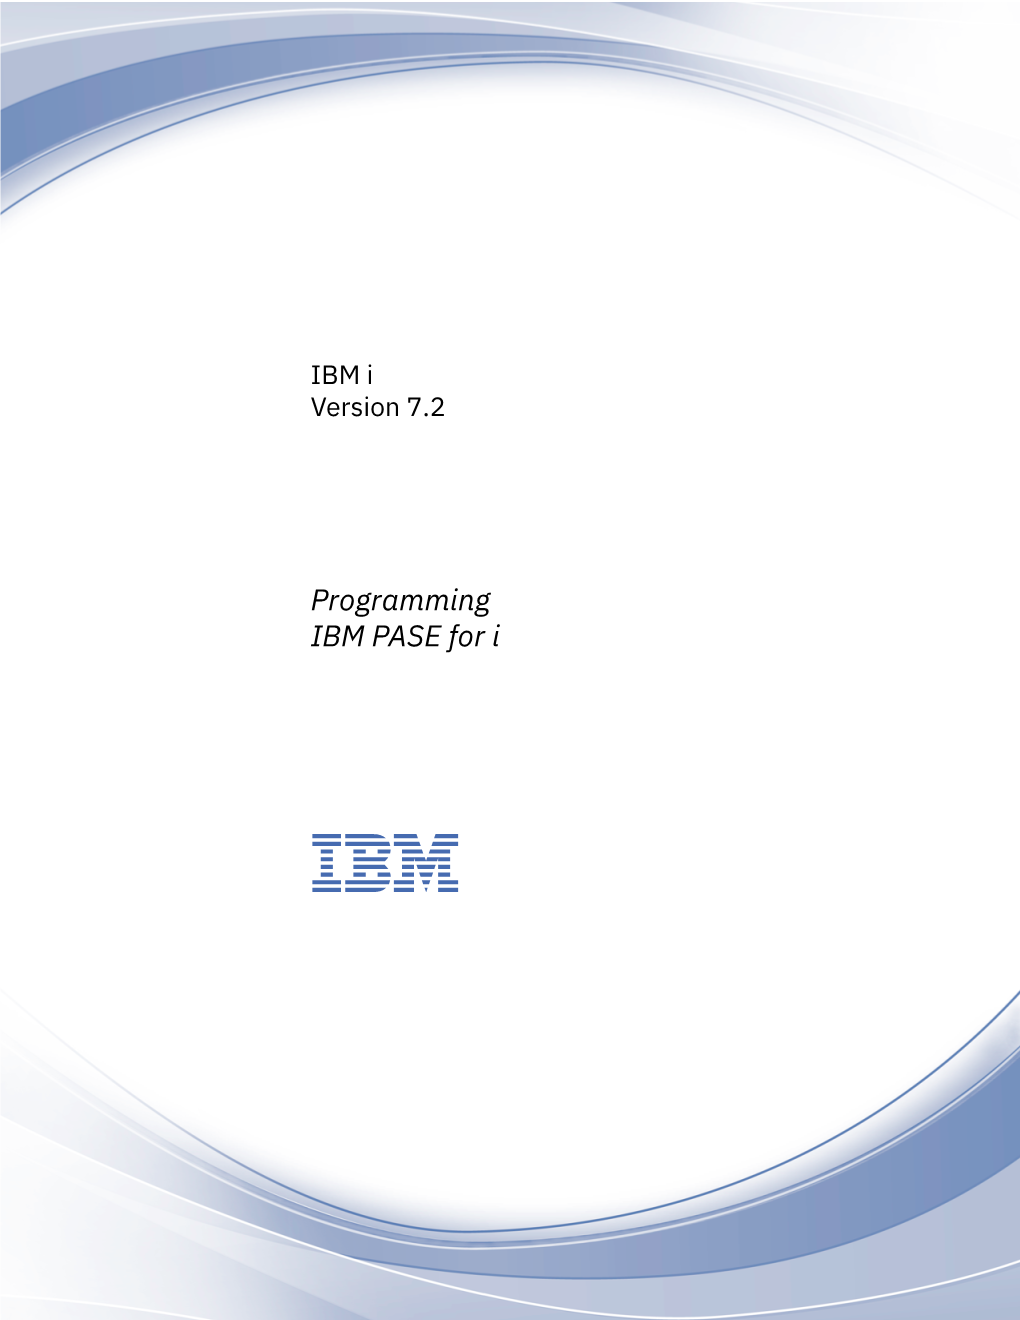 Programming IBM PASE for I